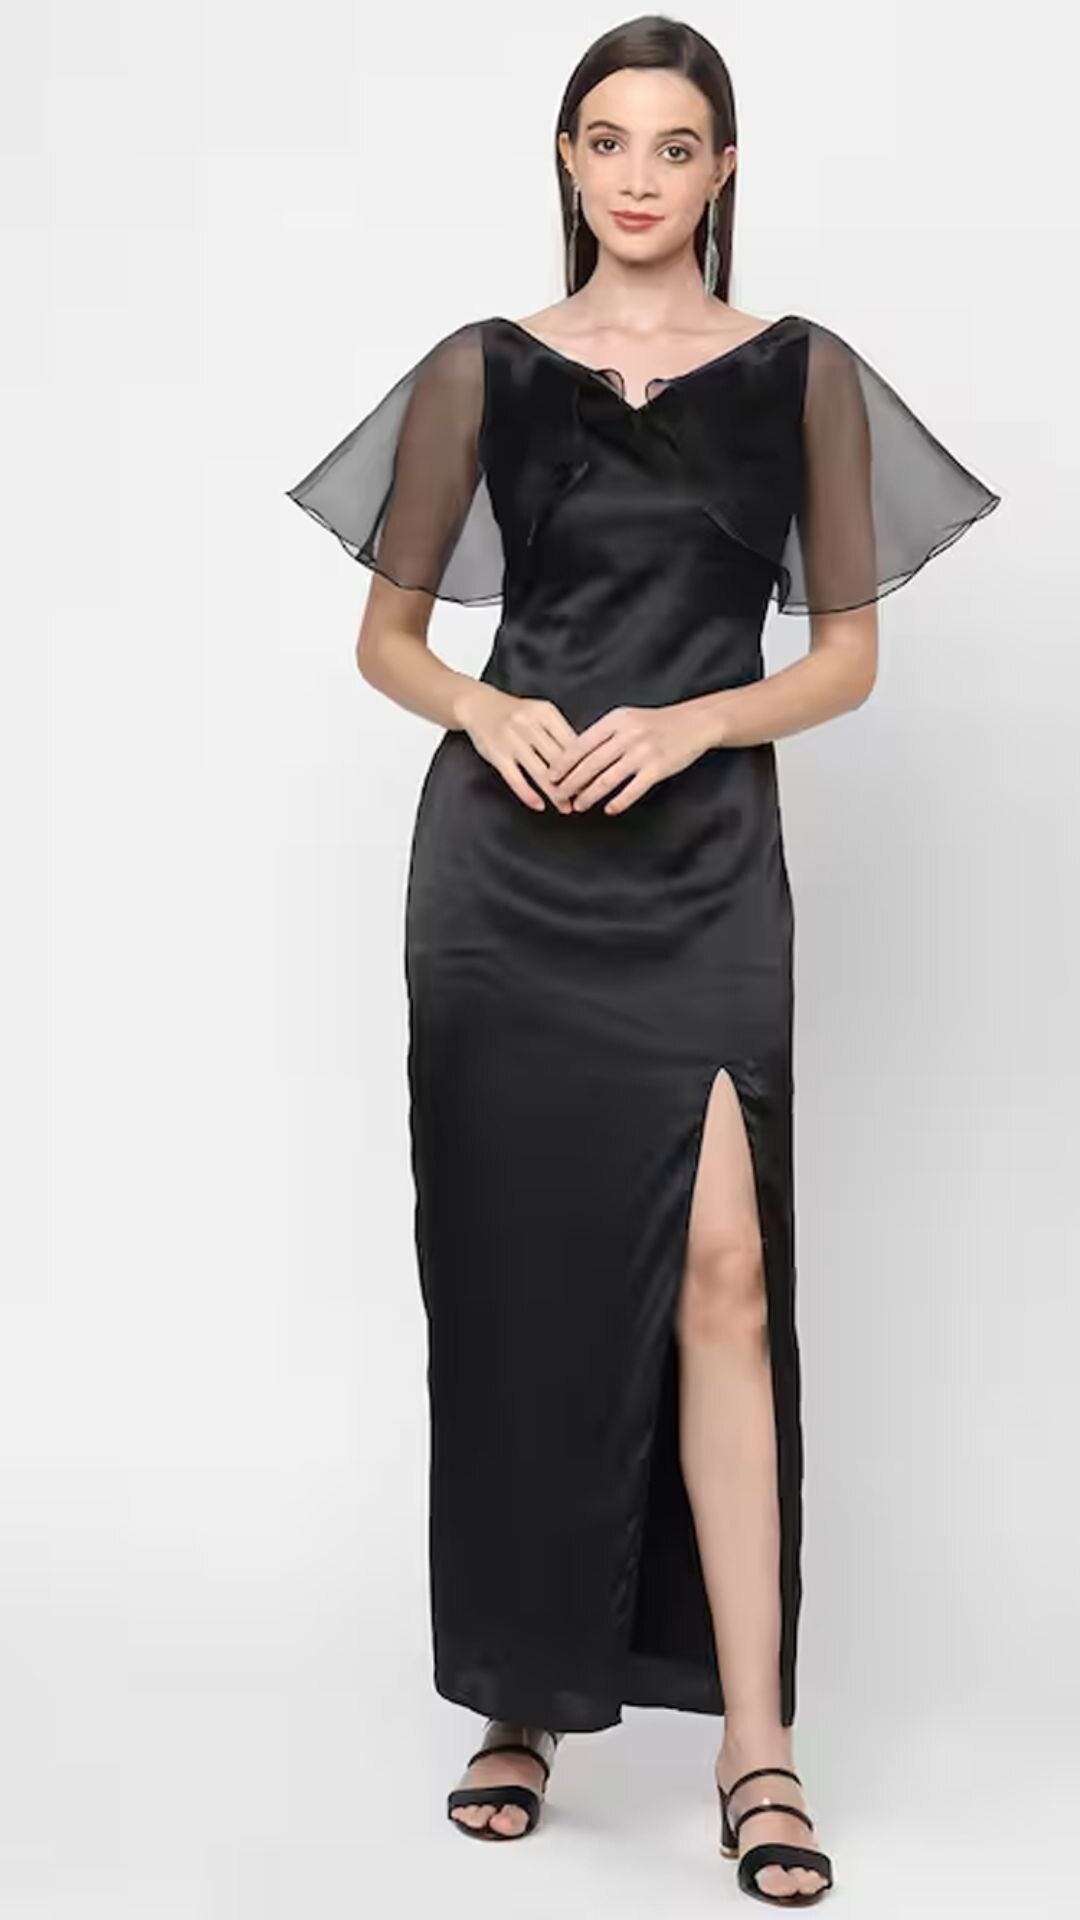 Fashion : पार्टीत दिसायचंय हटके? नवीन लुक हवा असेल तर, हे केप ड्रेस नक्की ट्राय करा.